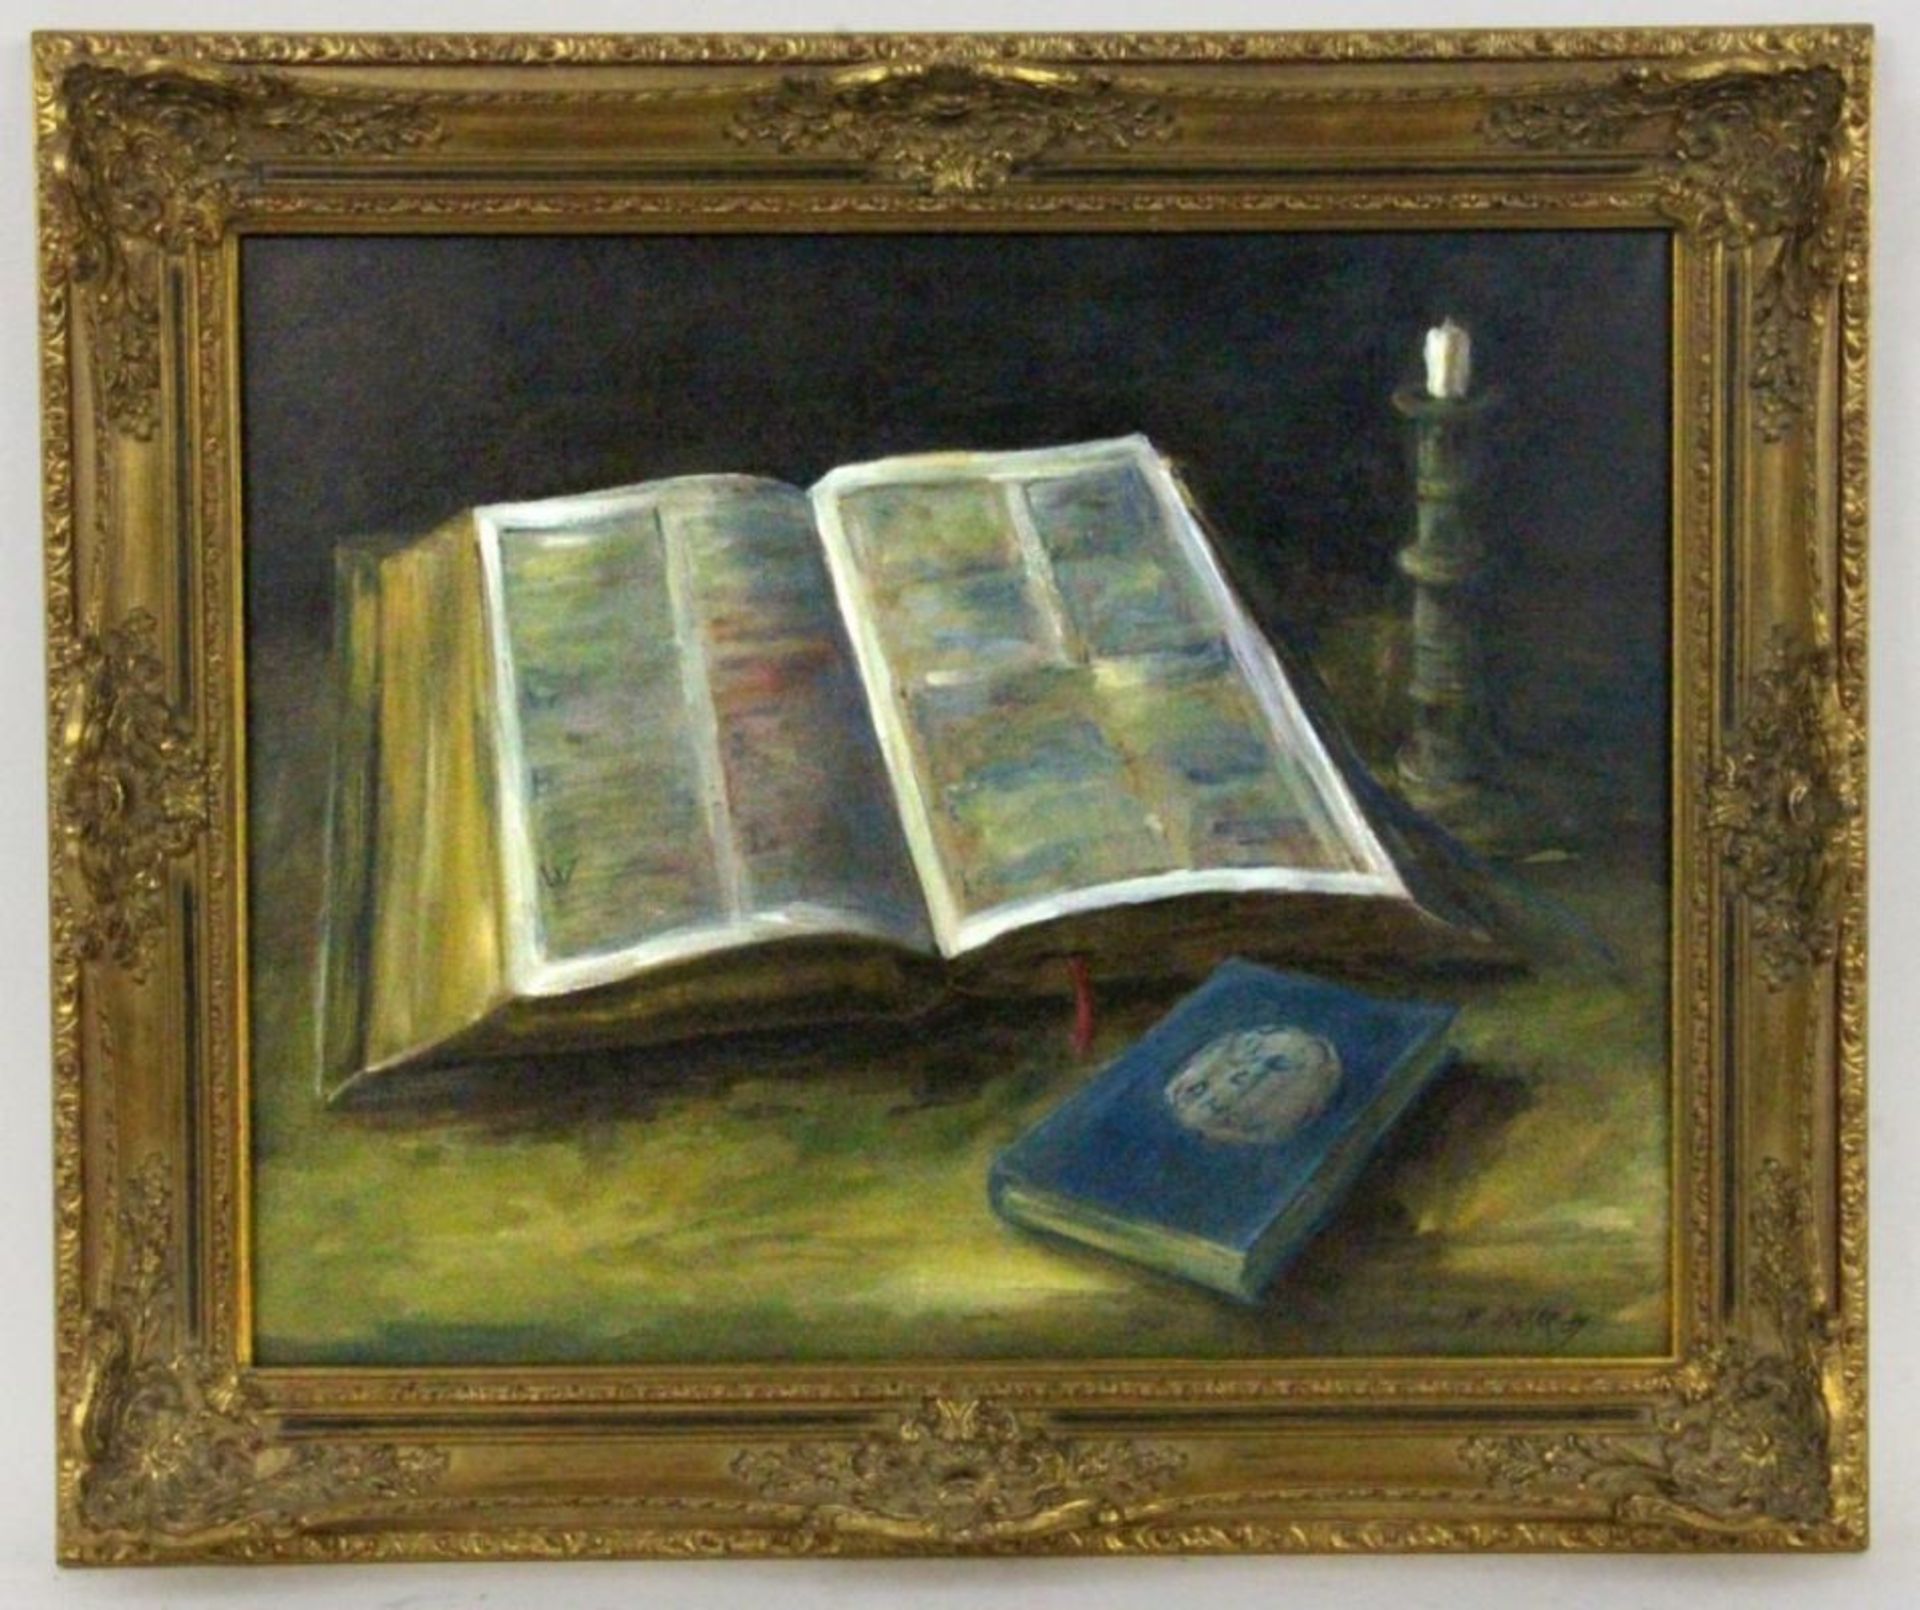 MOSER, H.20.Jh. Aufgeschlagenes Buch und Kerze. Öl/Lwwd., signiert und datiert: (19)89. 40x50xm,